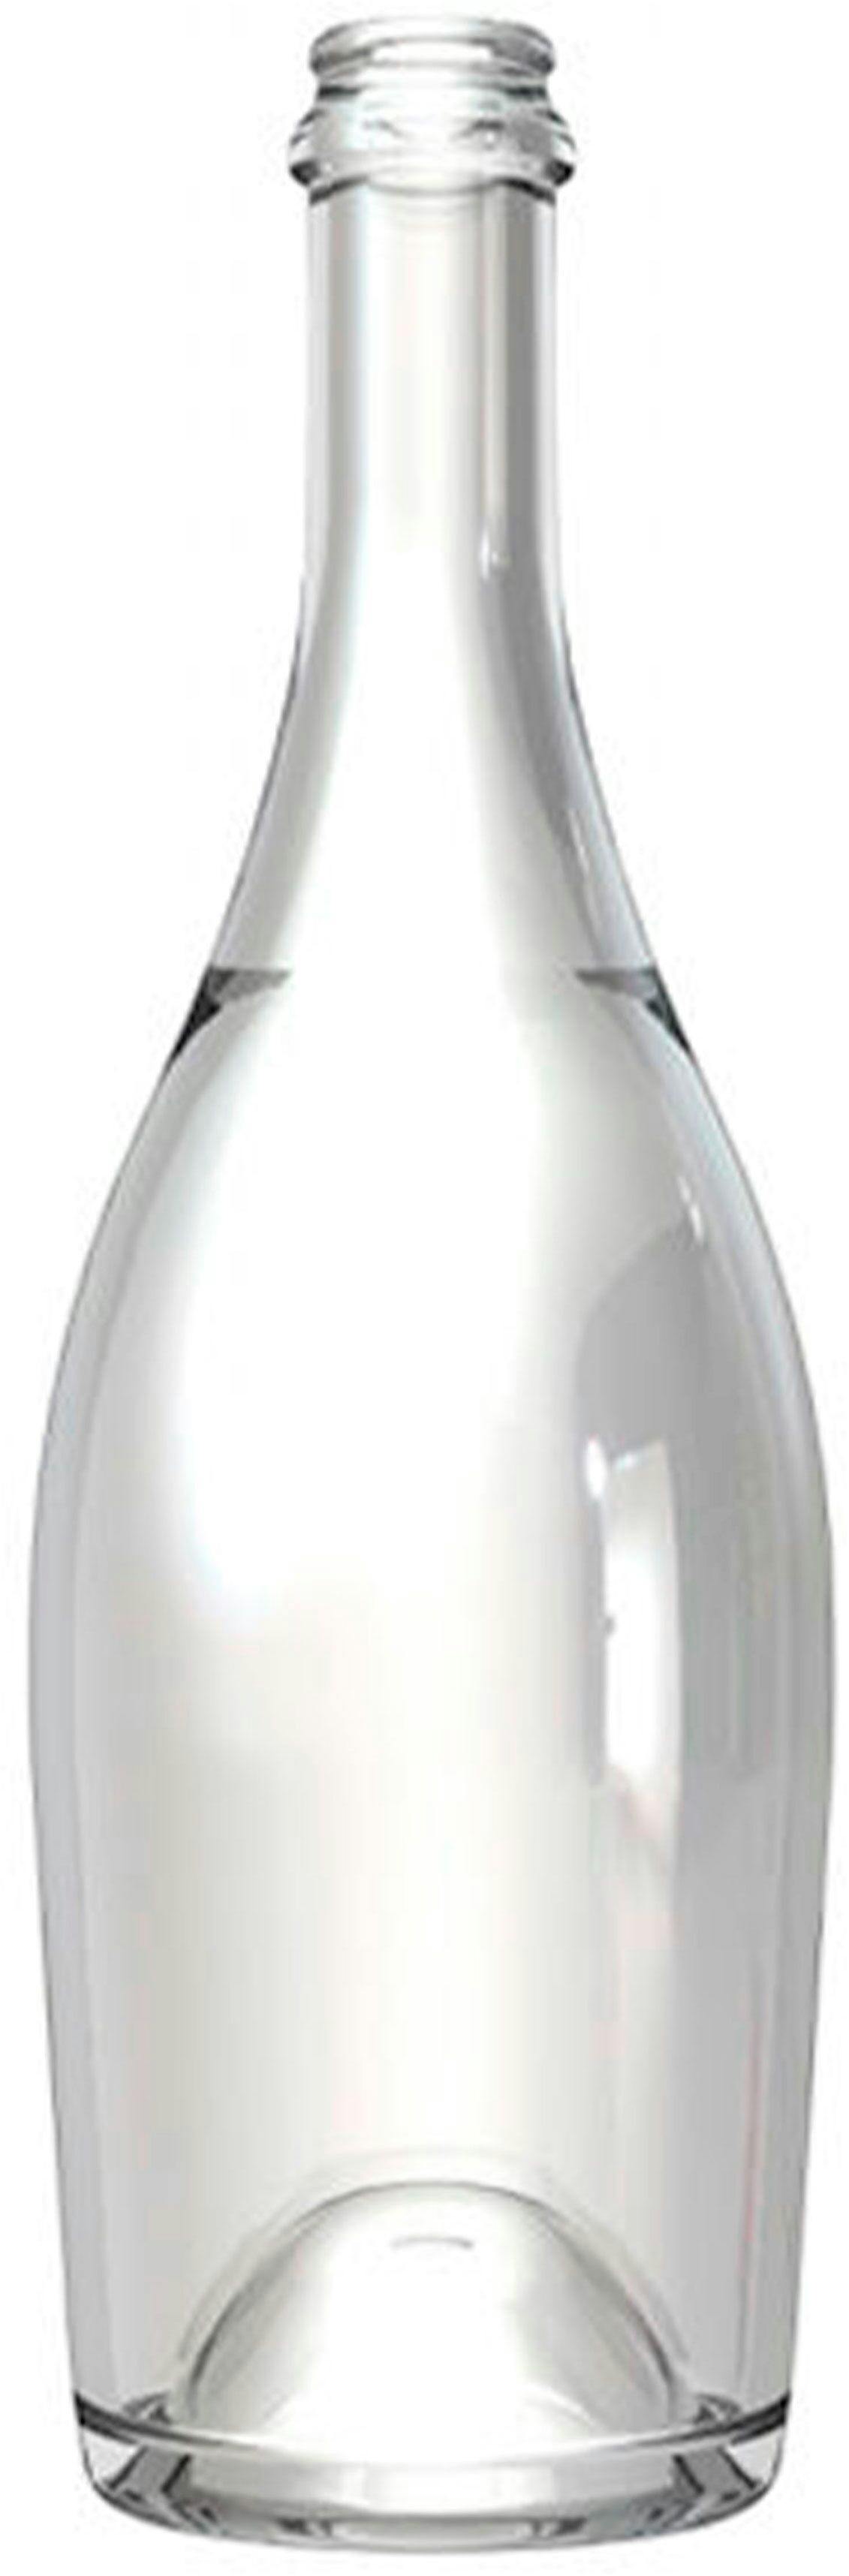 Flasche CHAMP  COLLIO 750 ml Kronkorken 29 ExtraNiedrig - 18 mm